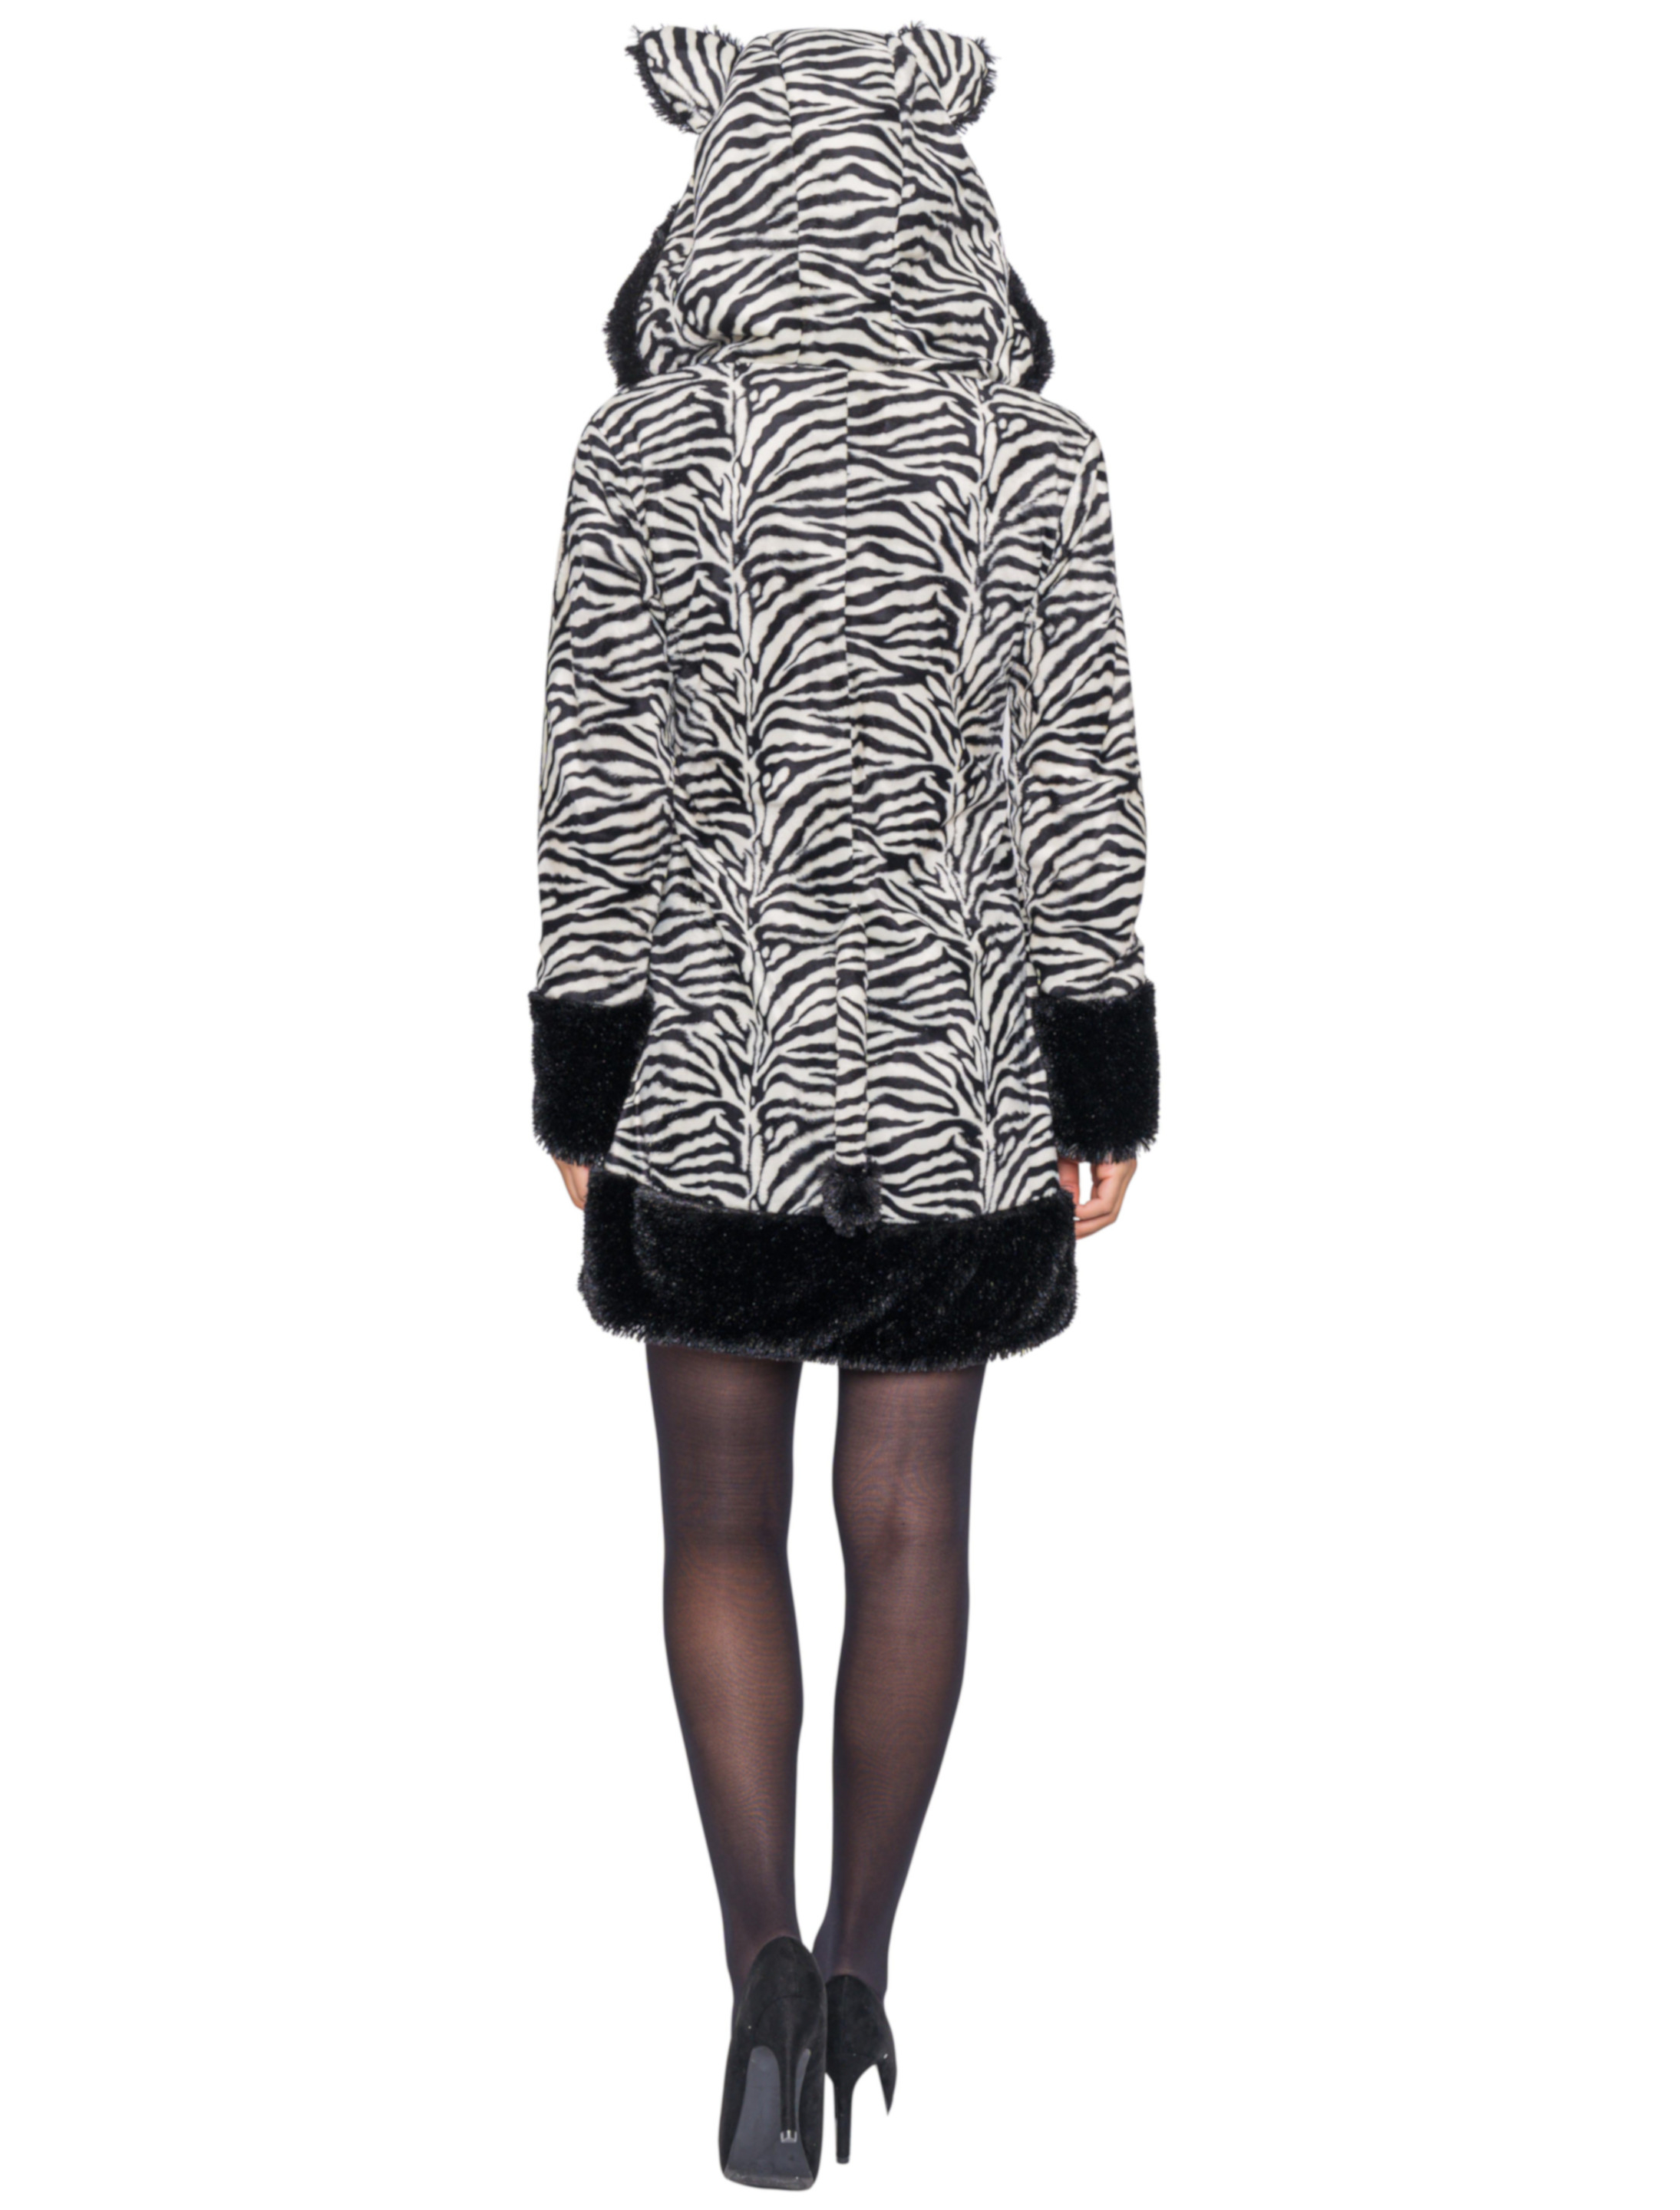 Kleid Plüsch Zebra Damen schwarz/weiß 36